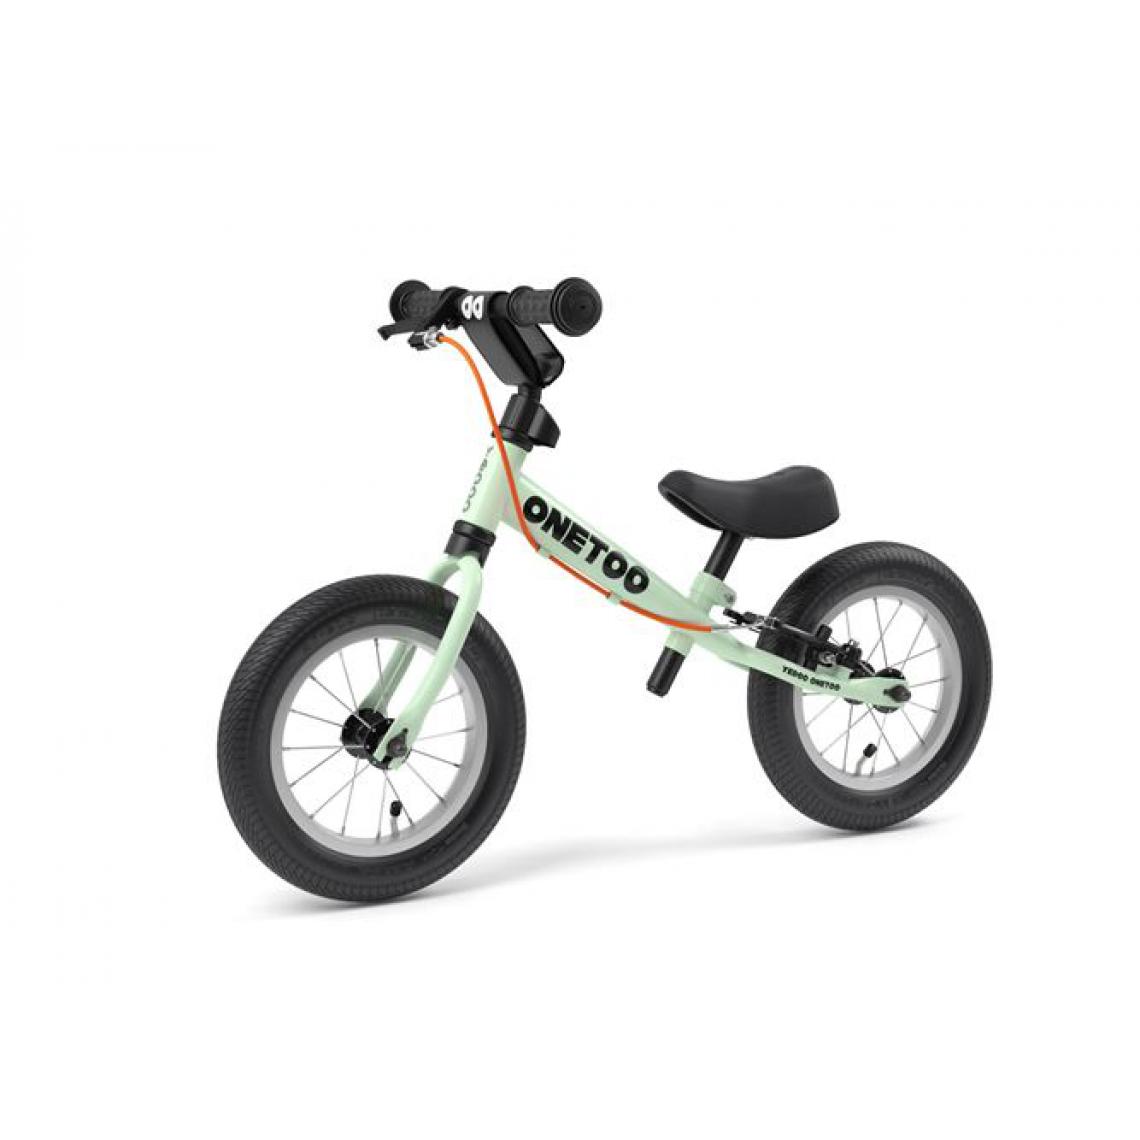 Yedoo - Balancebike Yedoo OneToo mint - Tricycle